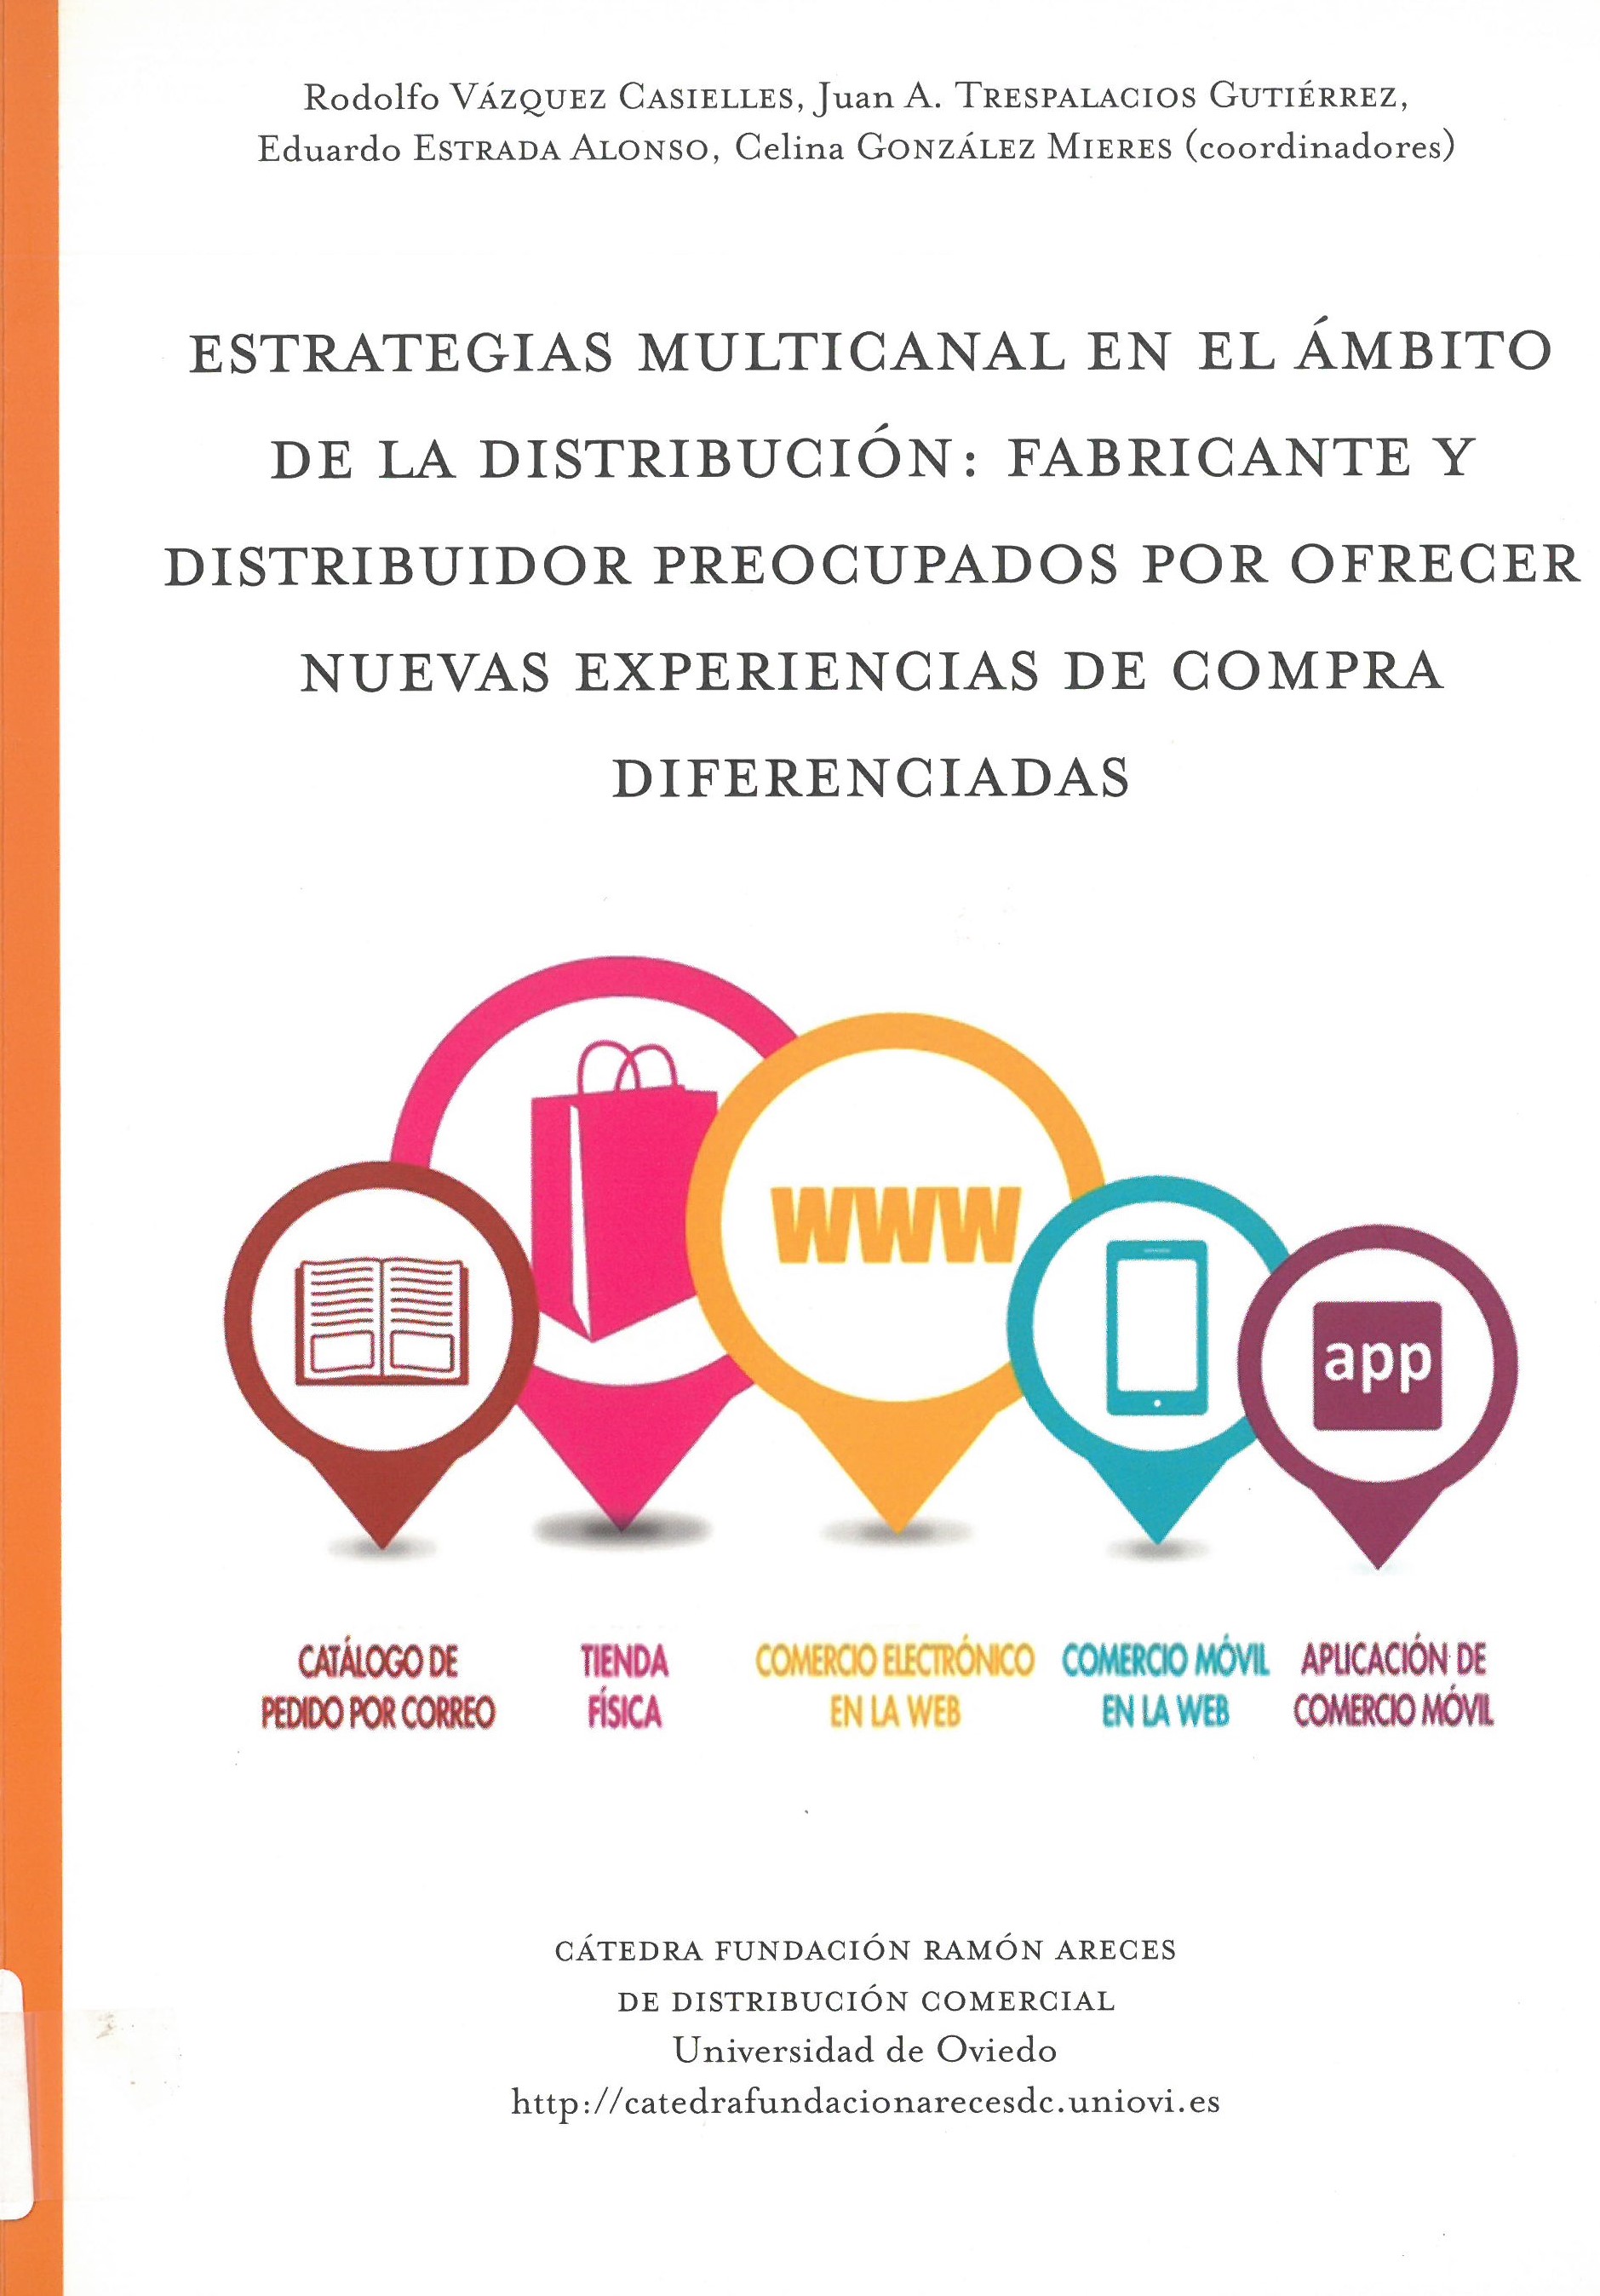 Imagen de portada del libro Estrategias multicanal en el ámbito de la distribución: fabricante y distribuidor preocupados por ofrecer nuevas experiencias de compra diferenciadas